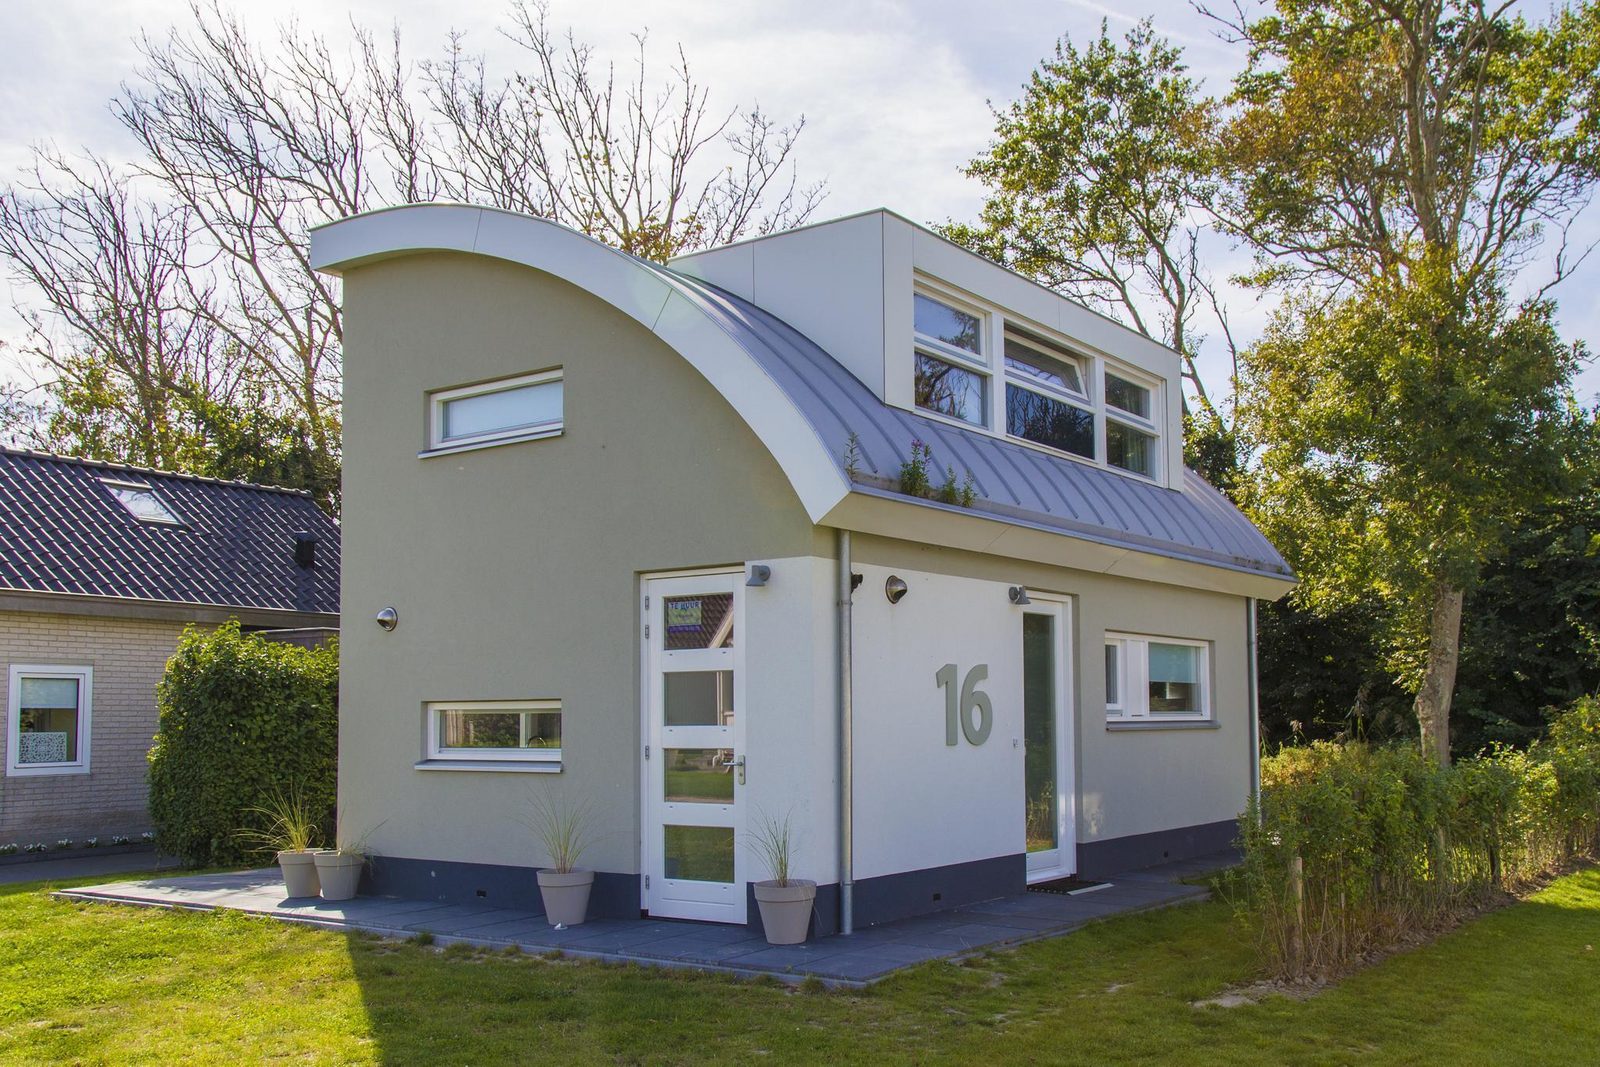 VZ905 Detached holiday home in Vlissingen